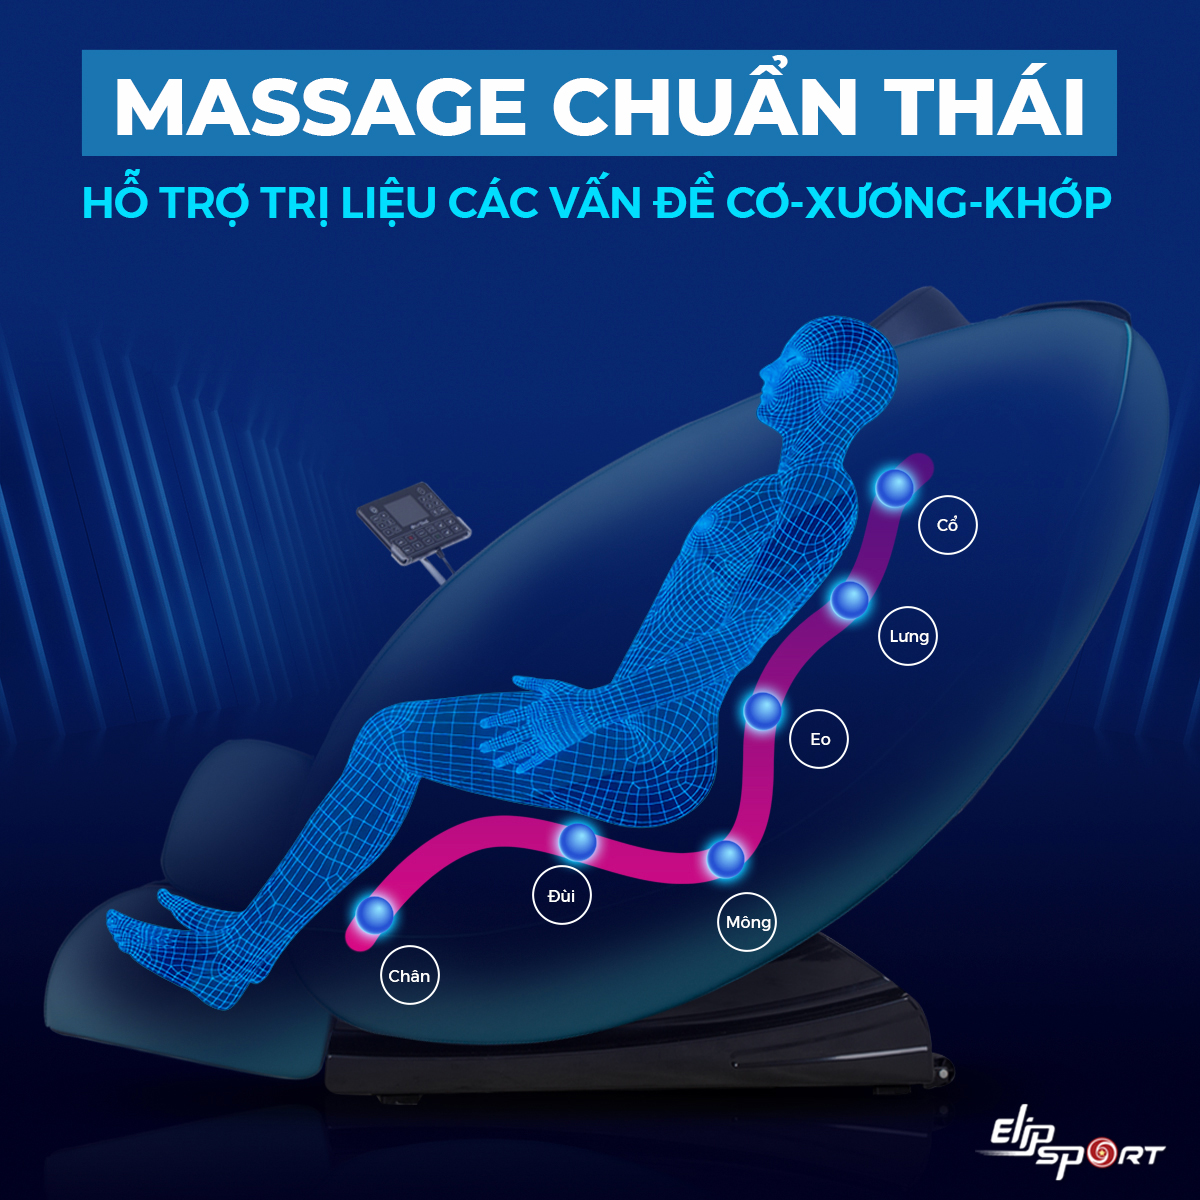 MASSAGE-CHUAN-THAI